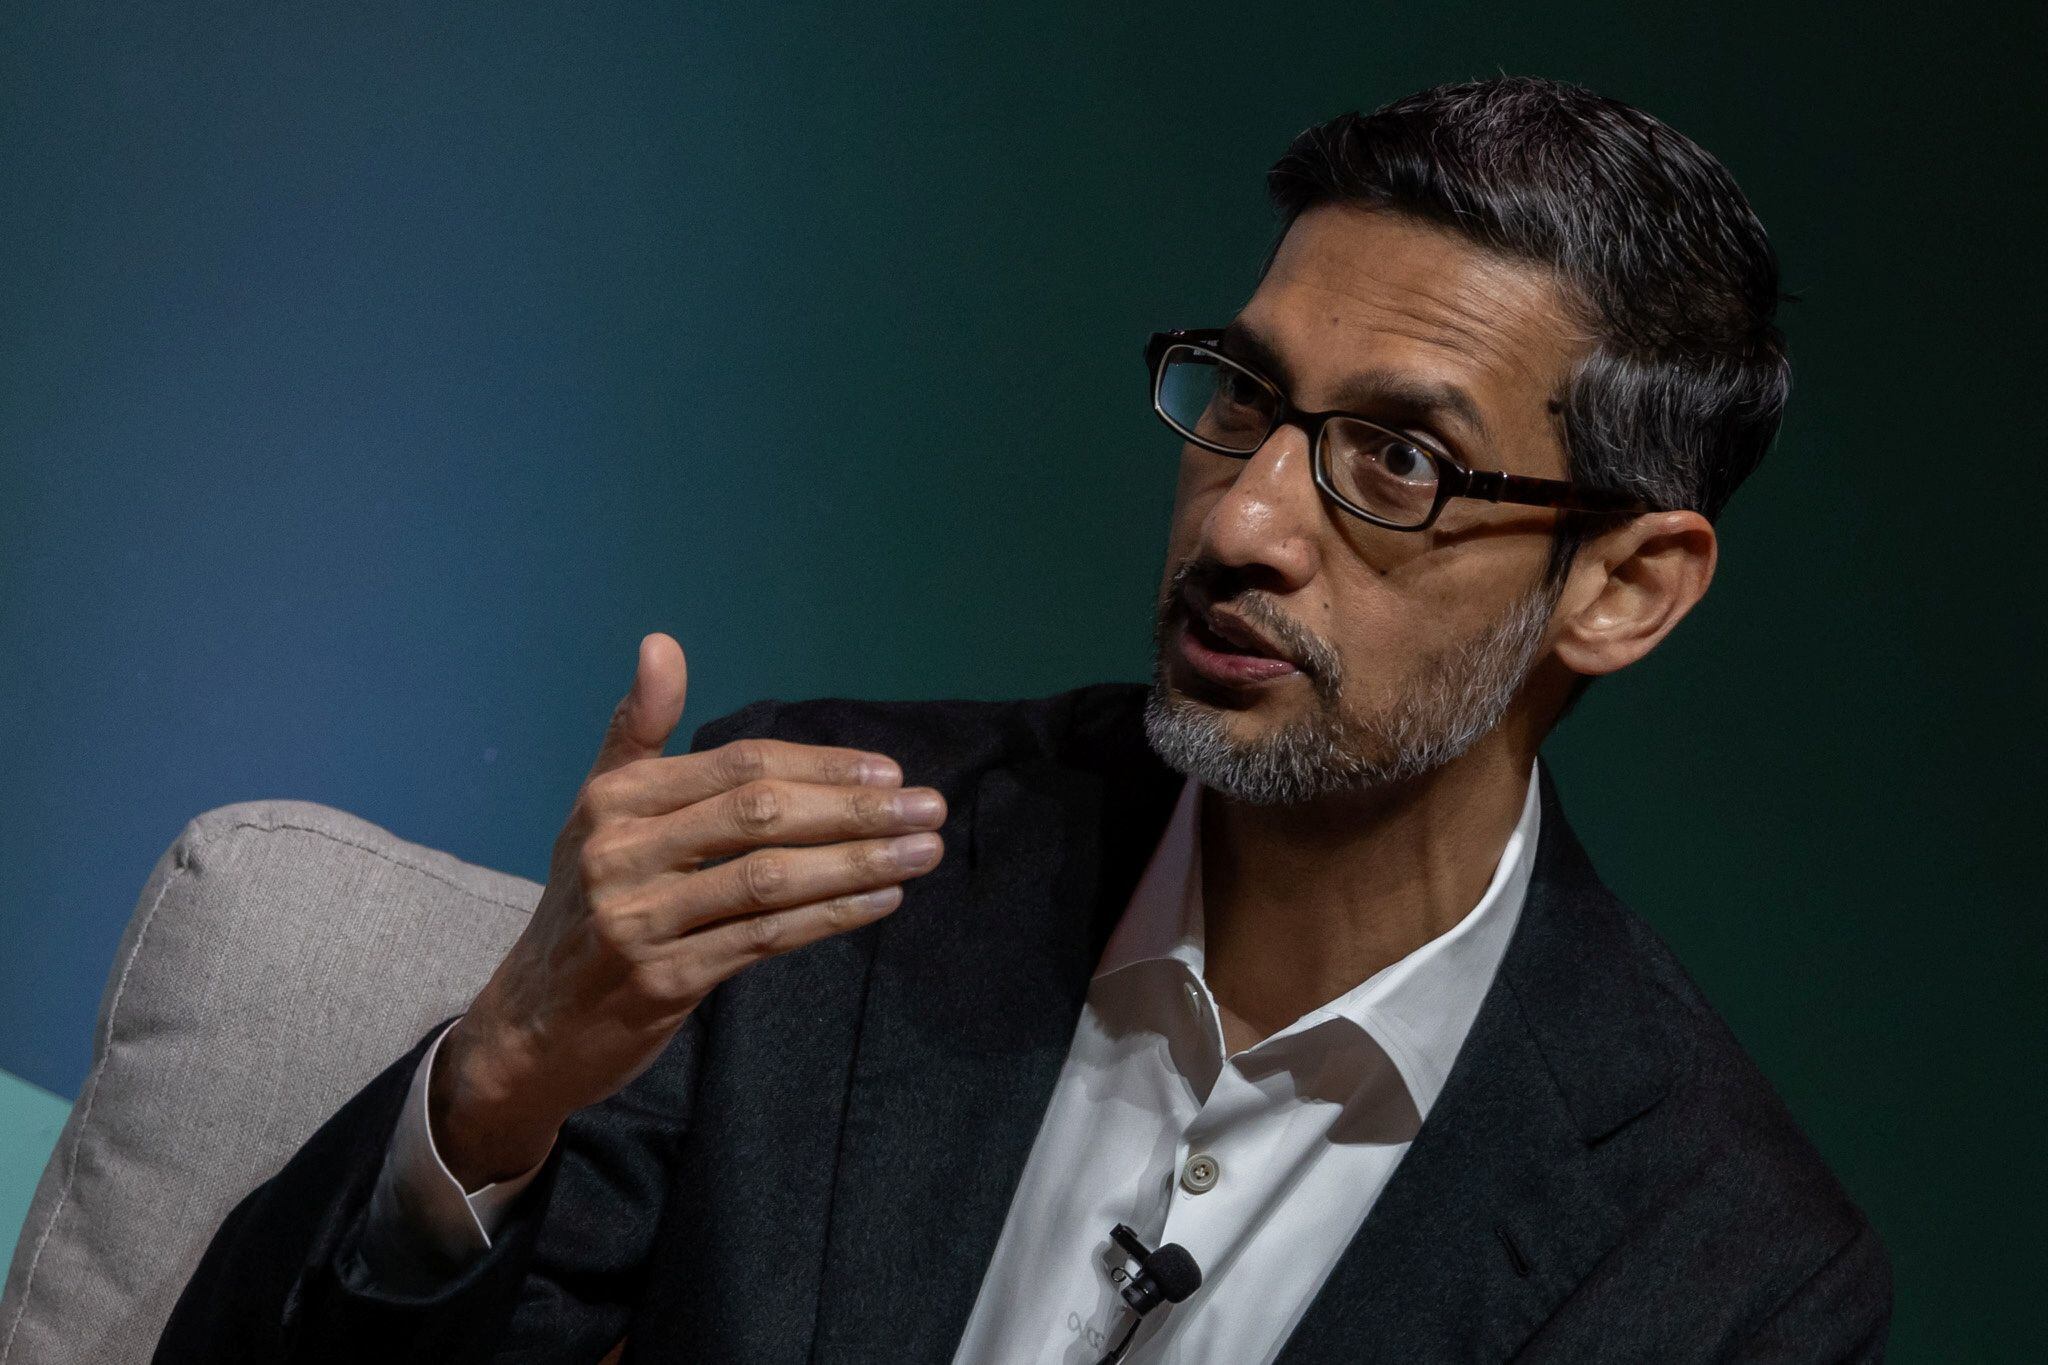 Sundar Pichai, CEO of Google and Alphabet Inc., indica que el avance con IA ha permitido el crecimiento de las compañías. REUTERS/Carlos Barria